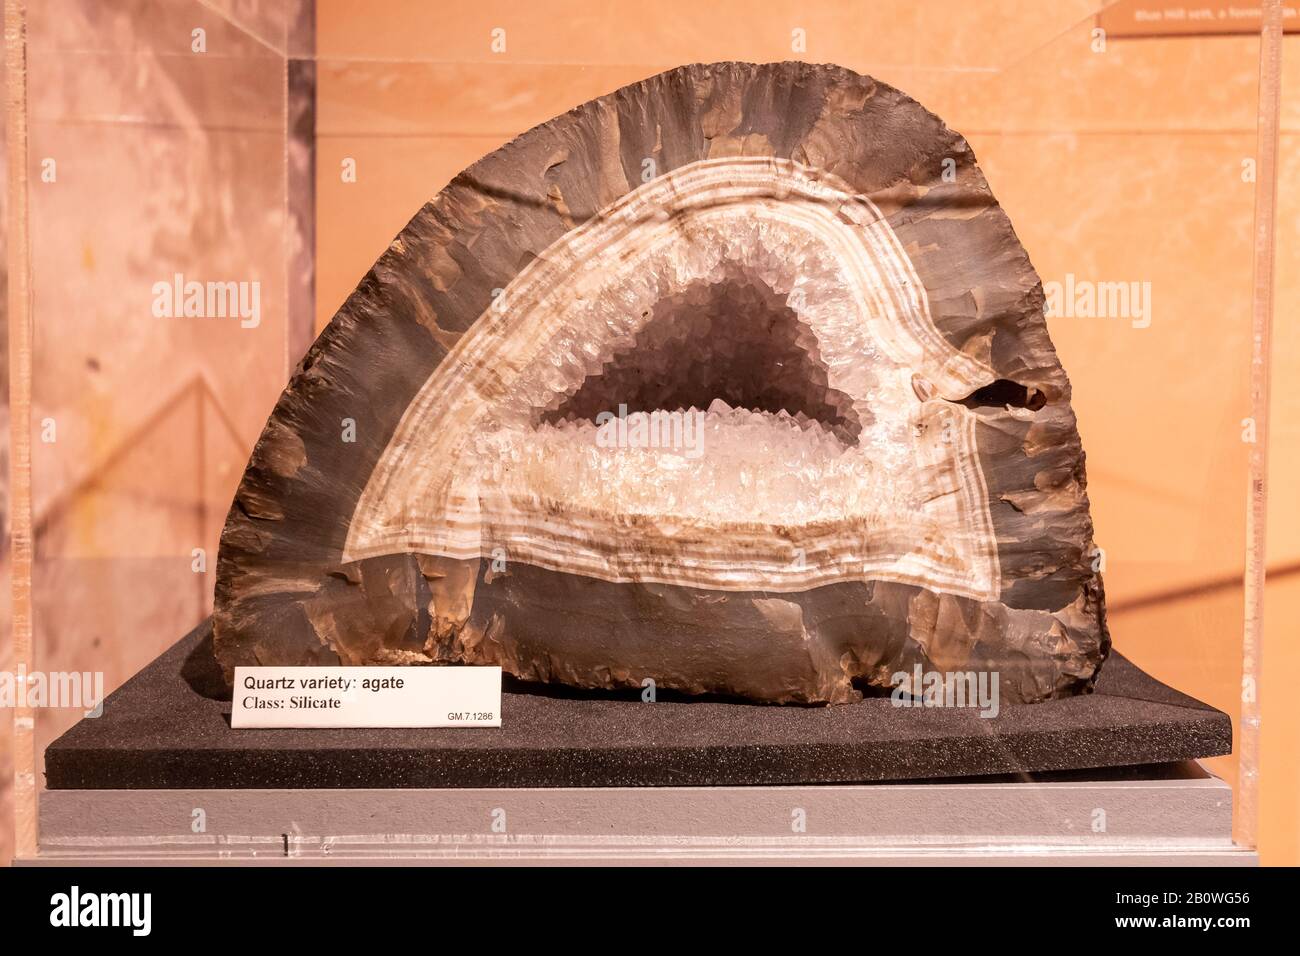 Mostra museo geologico, agar varietà quarzo, silicato di classe Foto Stock